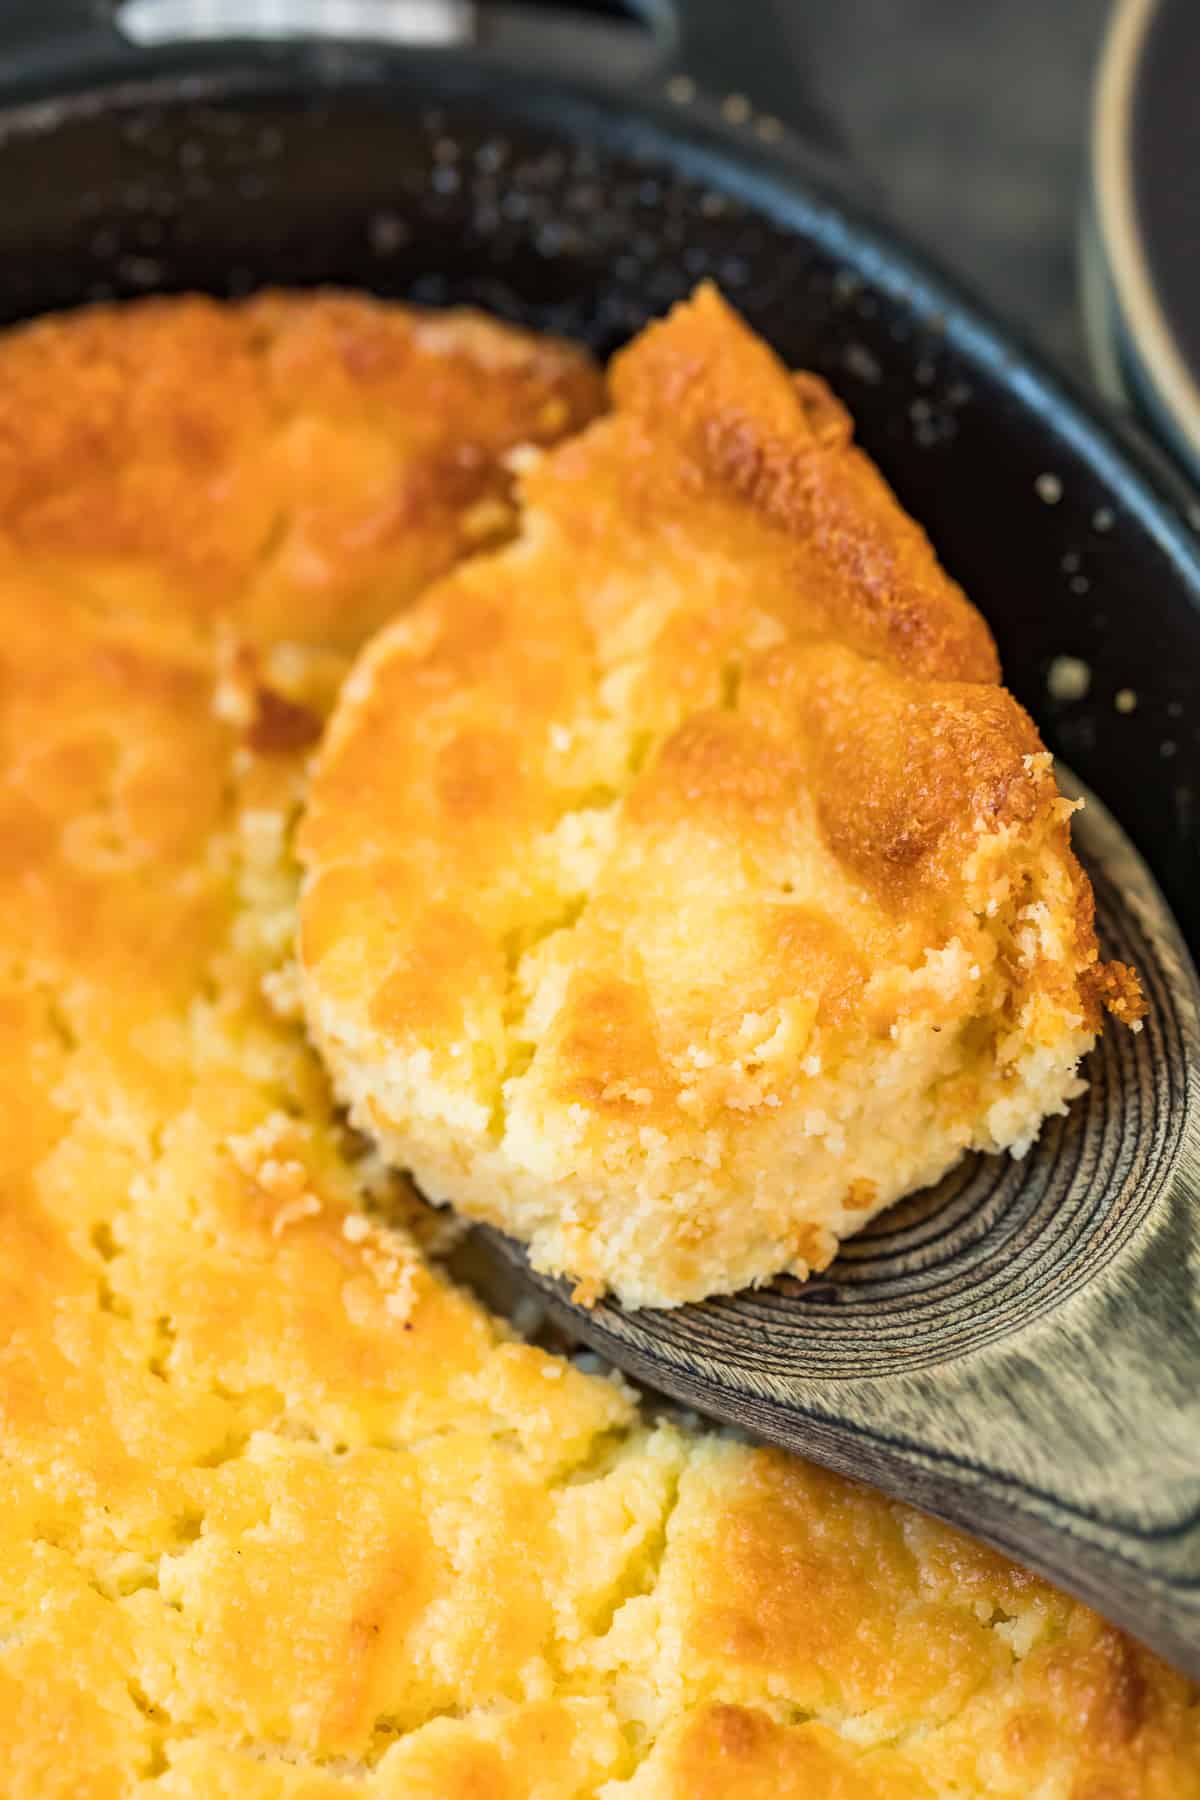 https://www.thecookierookie.com/wp-content/uploads/2020/10/buttermilk-spoon-bread-recipe-4-of-8.jpg